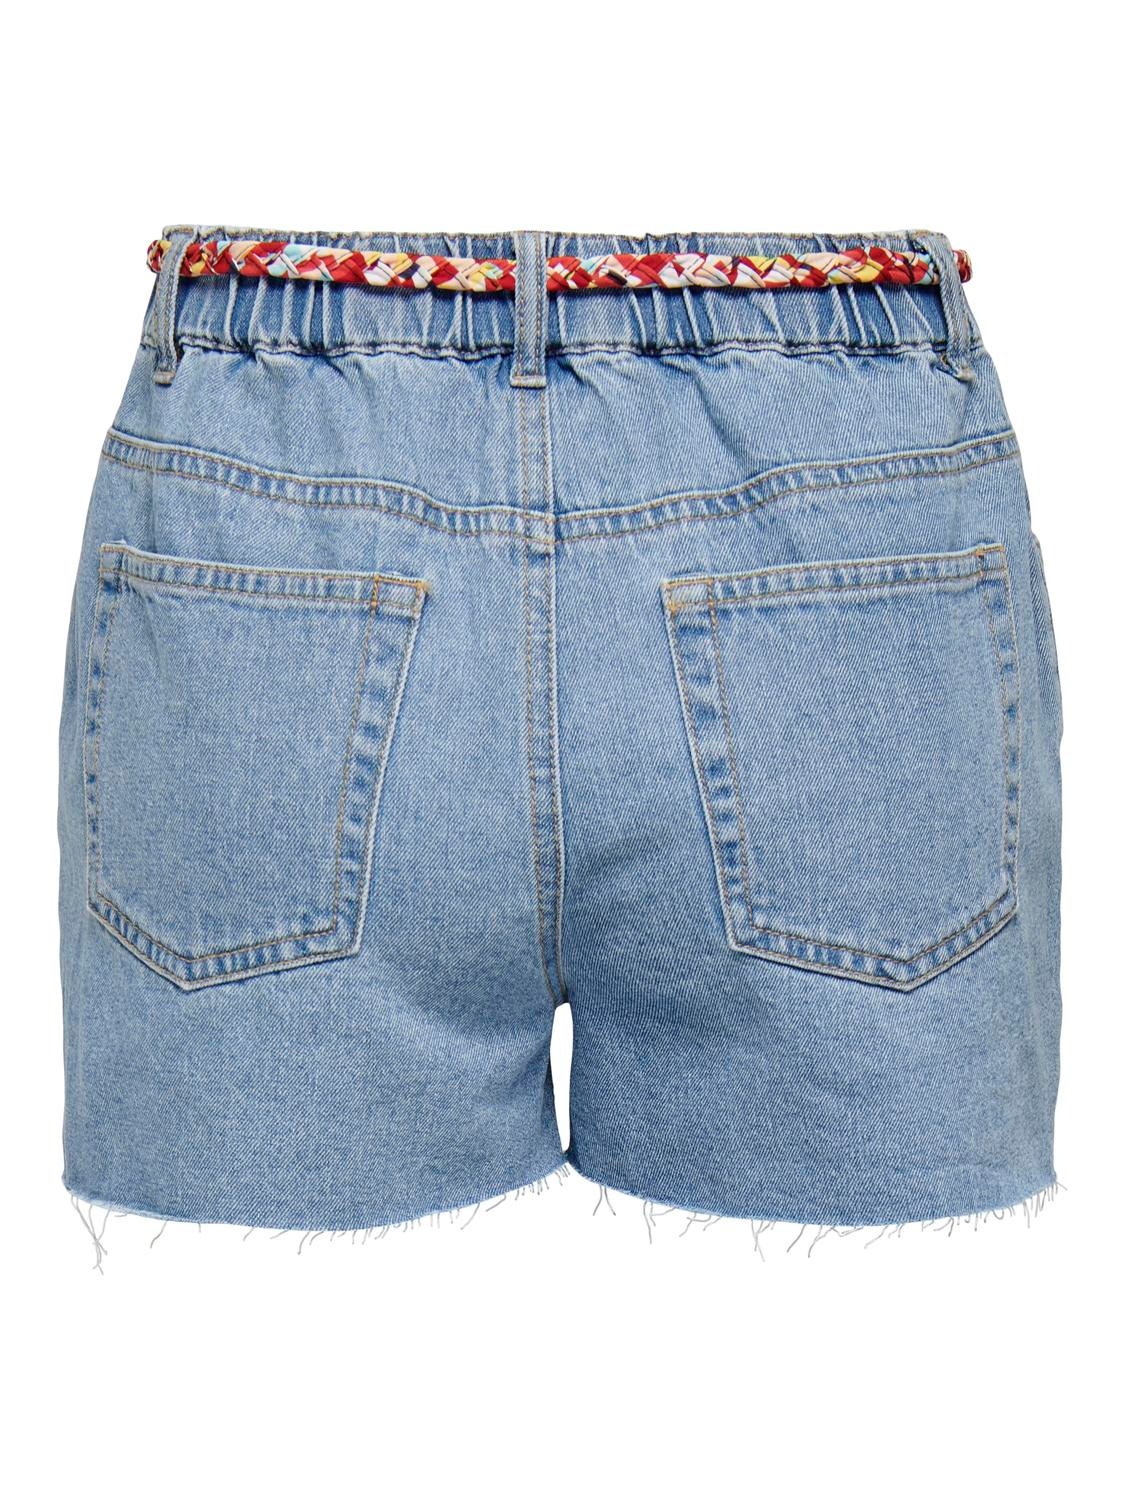 ONLY Loose Fit High waist Shorts -Light Blue Denim - 15290668